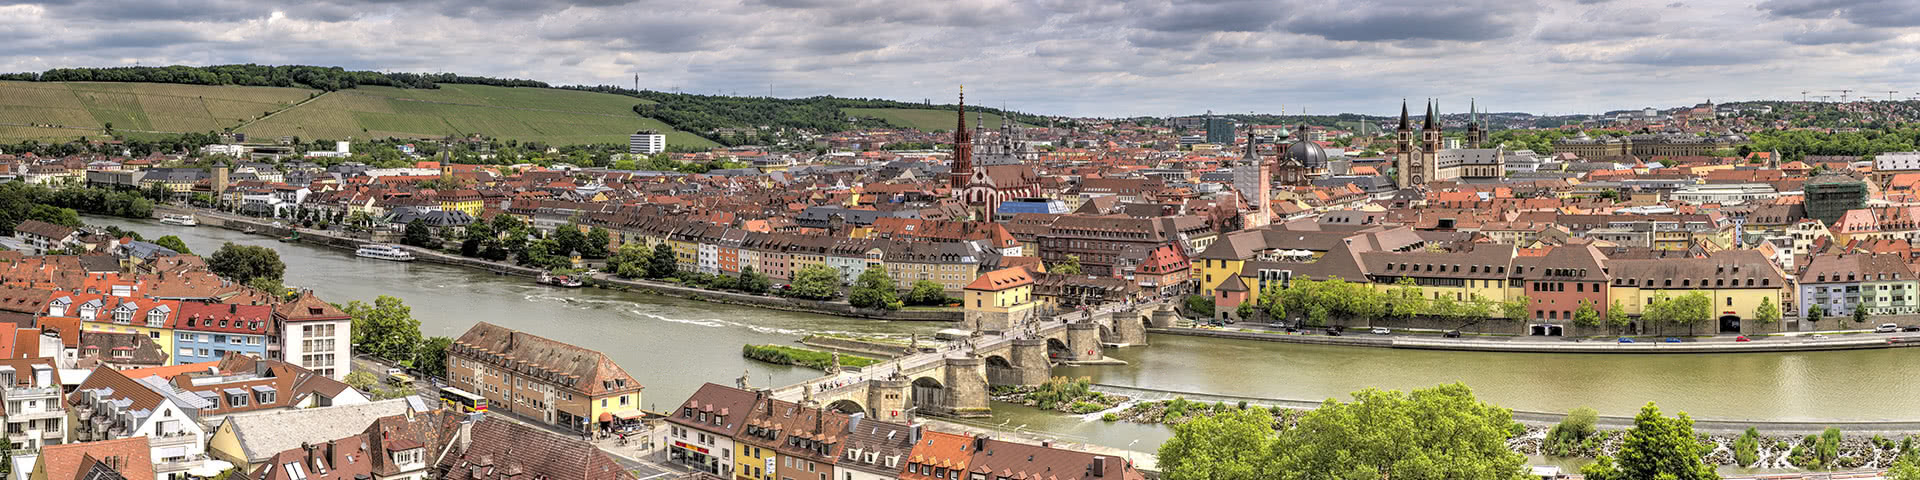 Übersicht über die Innstadt von Würzburg mit dem Fluß Main